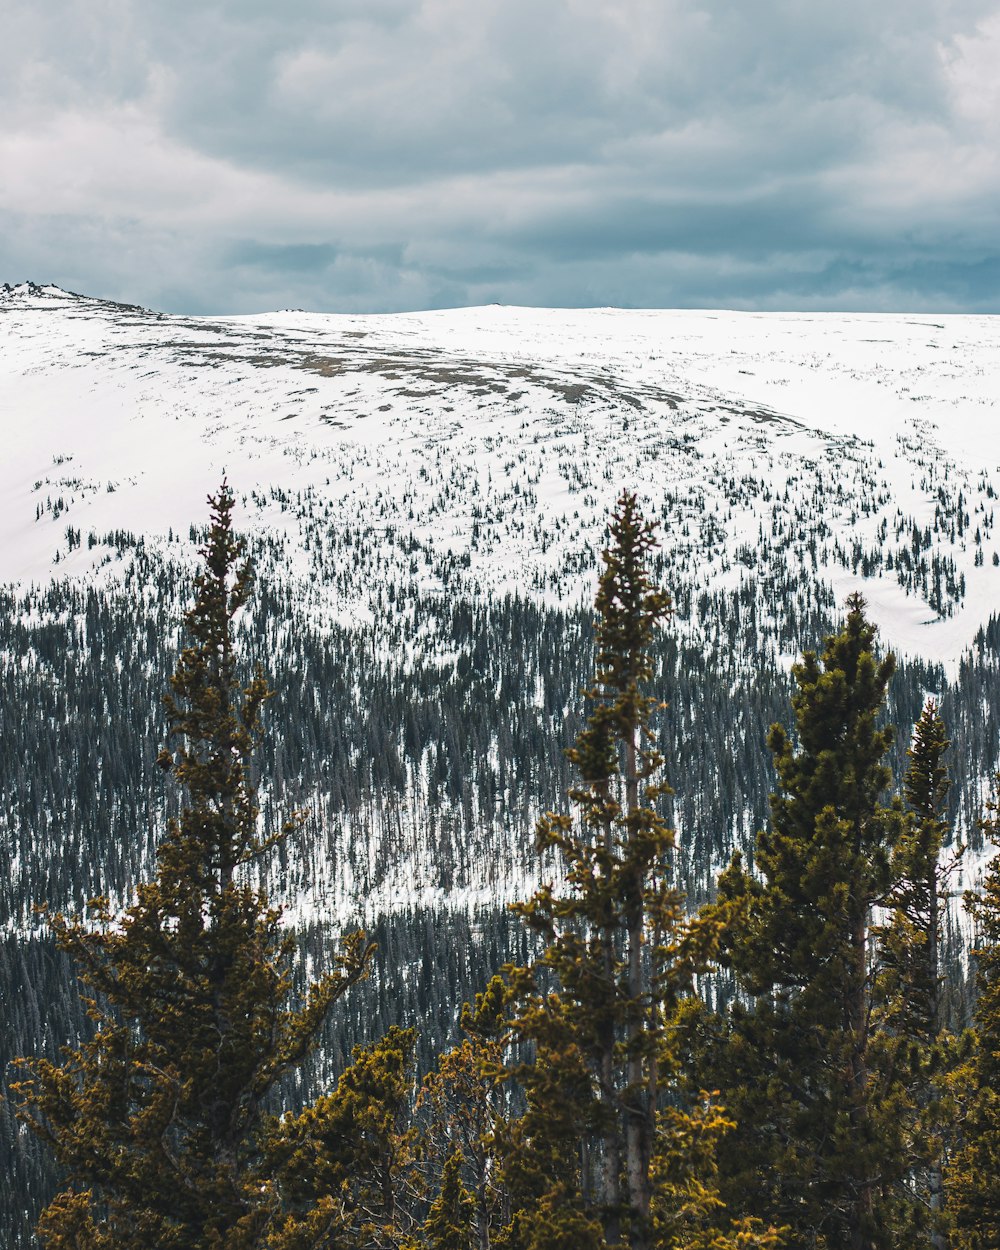 前景に木々が生い茂る雪山